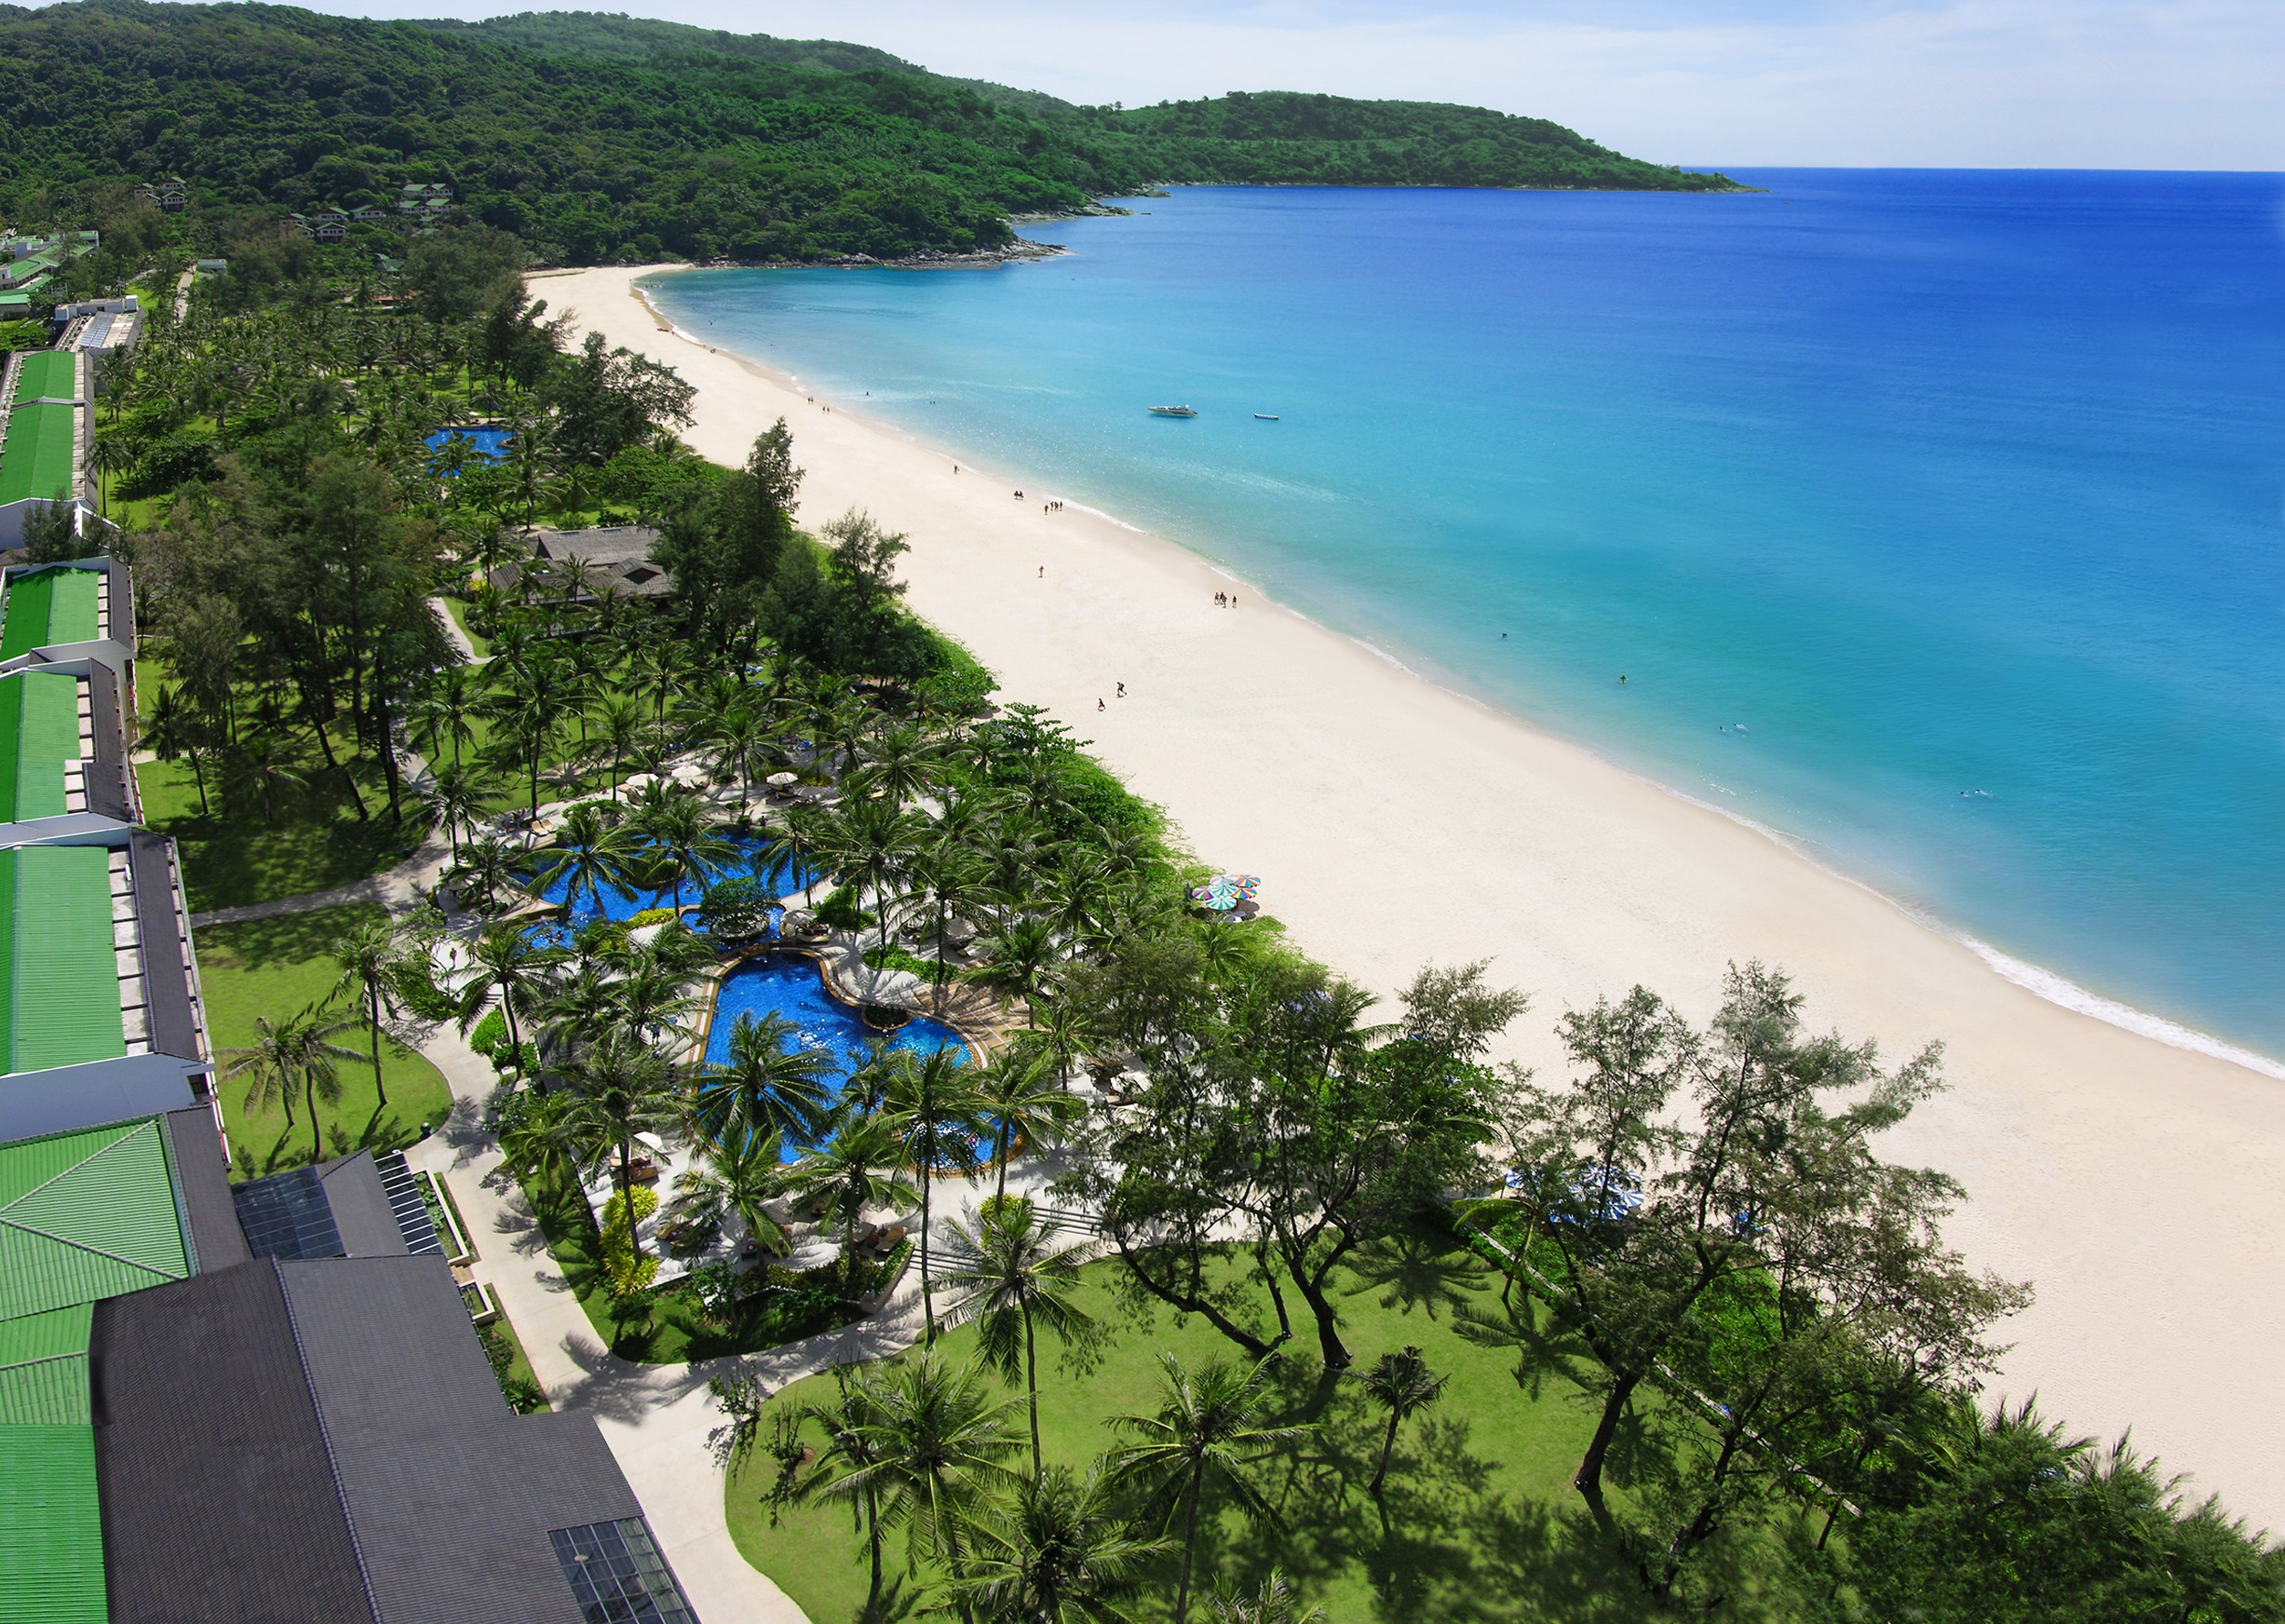 Katathani Beach Resort à Phuket Agence voyage spécialiste spécialisée valais suisse romande français francophone privé à la carte sur mesure en mode voyage séjour vacances thaïlande thailande